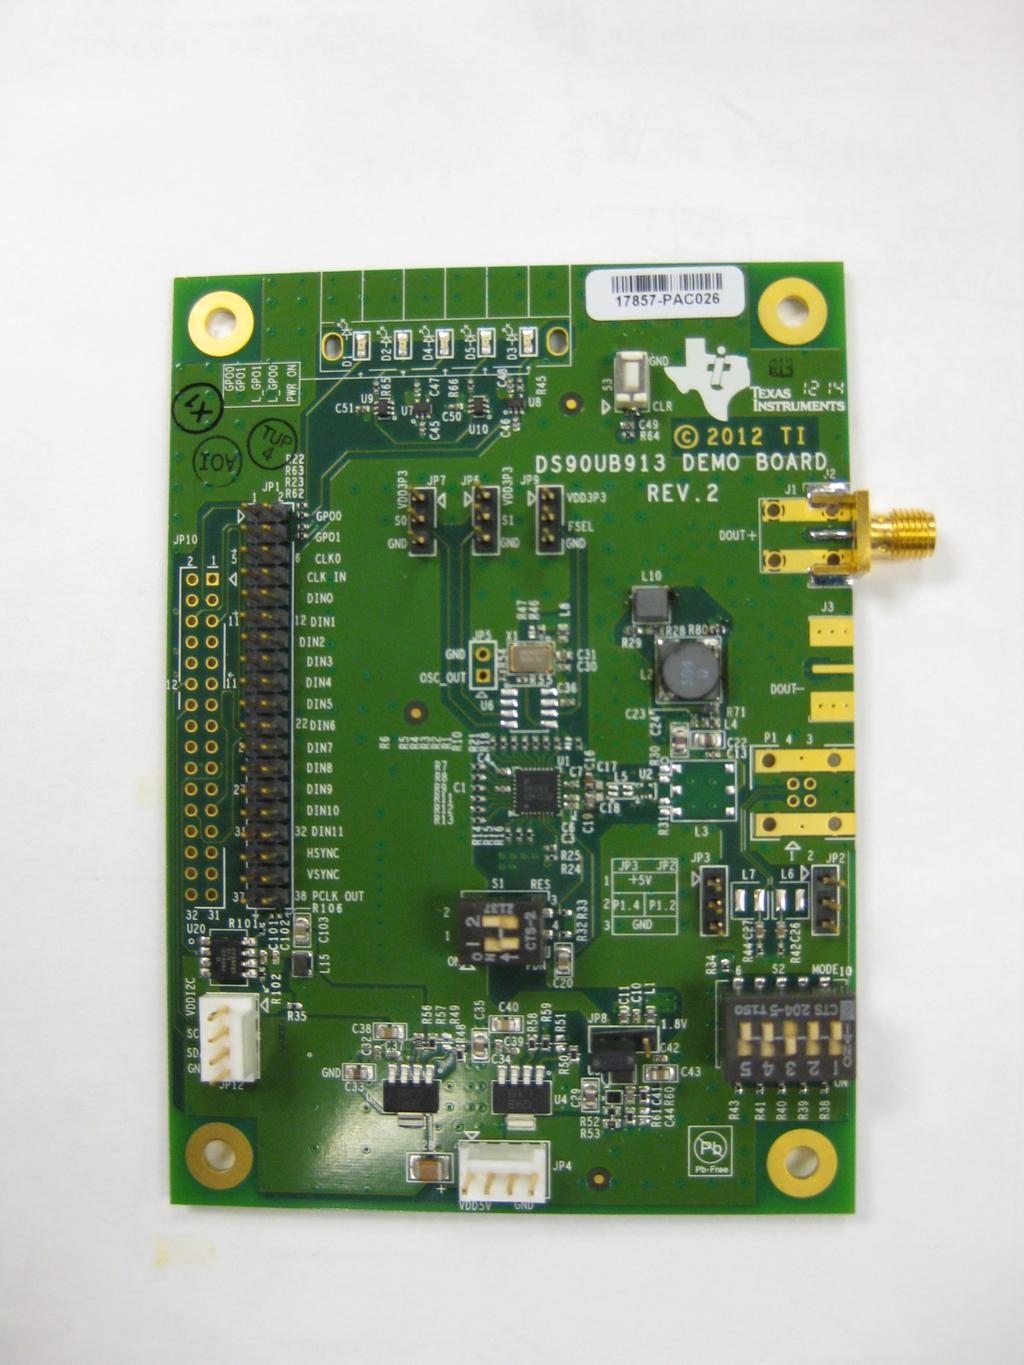 S1 JP1 : D0:D11, HS, VS, PCLK Switch 1 PDB Switch 2 RES0 S2 JP4 Power Switch 3 External Oscillator mode